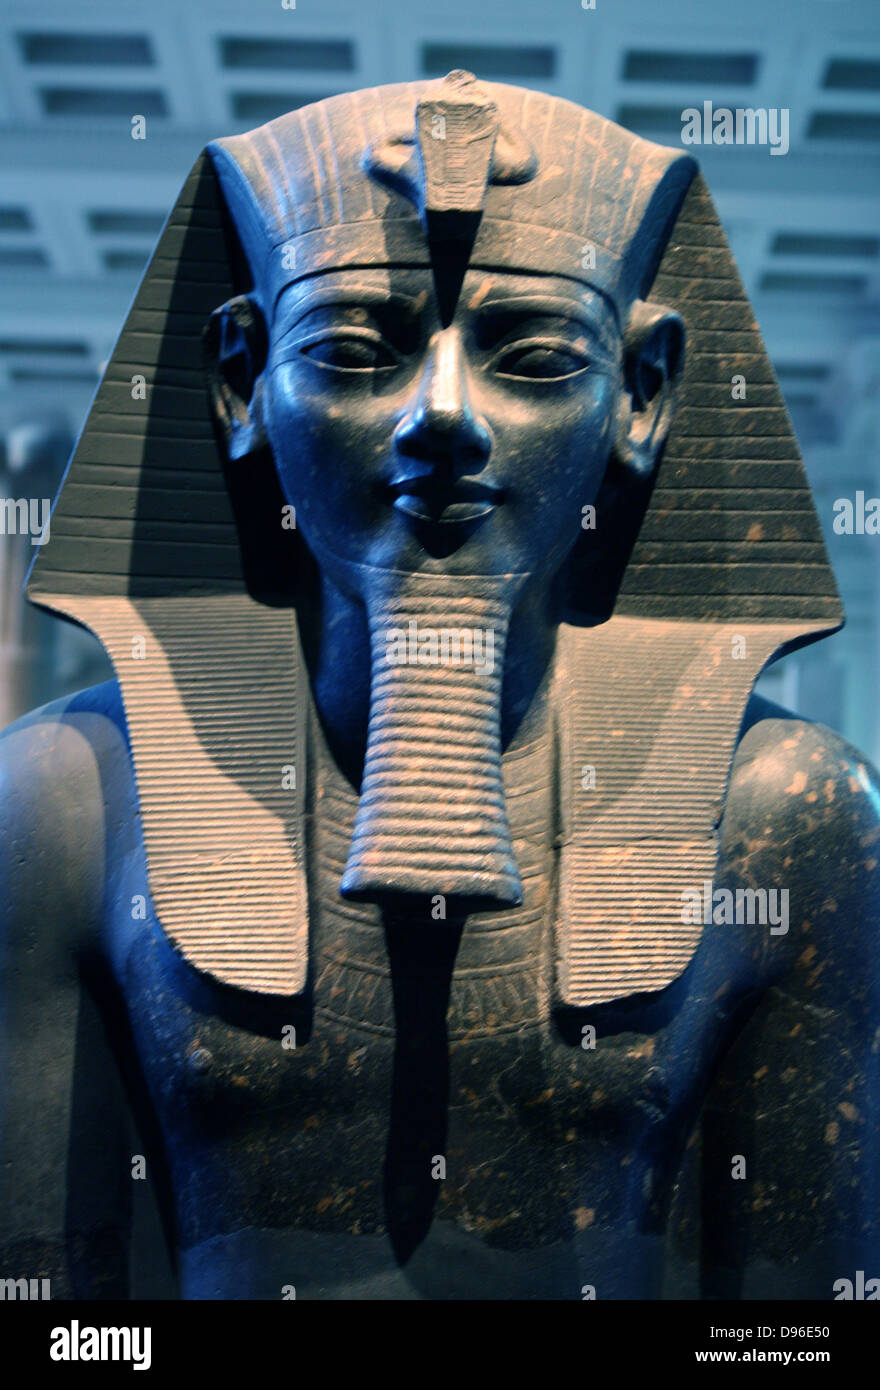 Statue du Roi Amenhotep III. 18e dynastie, vers 1400 av. J.-C. le roi de Thèbes est représenté en robe et pose classique. Assis sur un trône avec les deux mains à plat sur les genoux, elle porte un nemes-headcloth, fausse barbe et kilt court, qui équipé d'une cérémonie de la queue de taureau, indiqué entre la jambe. Les noms du roi sont inscrits sur la face avant et arrière du trône et de la courroie de la kilt. Banque D'Images